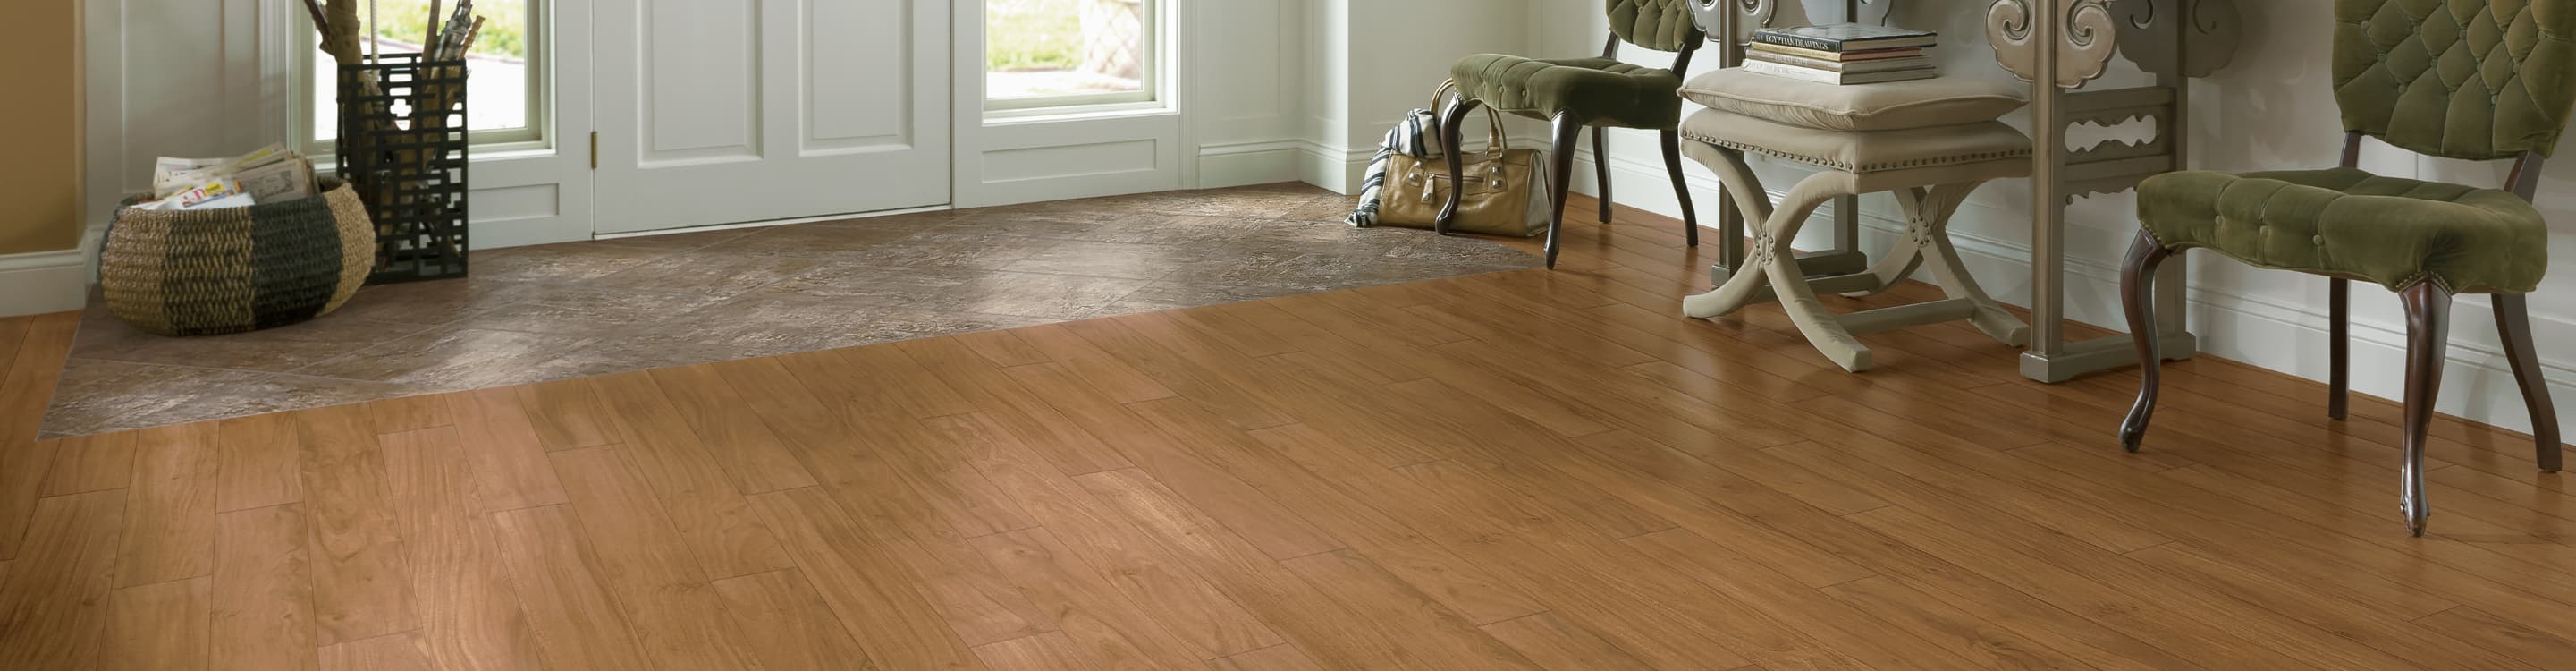 Linoleum Flooring: Residential & Commercial Tile, Planks, Sheet